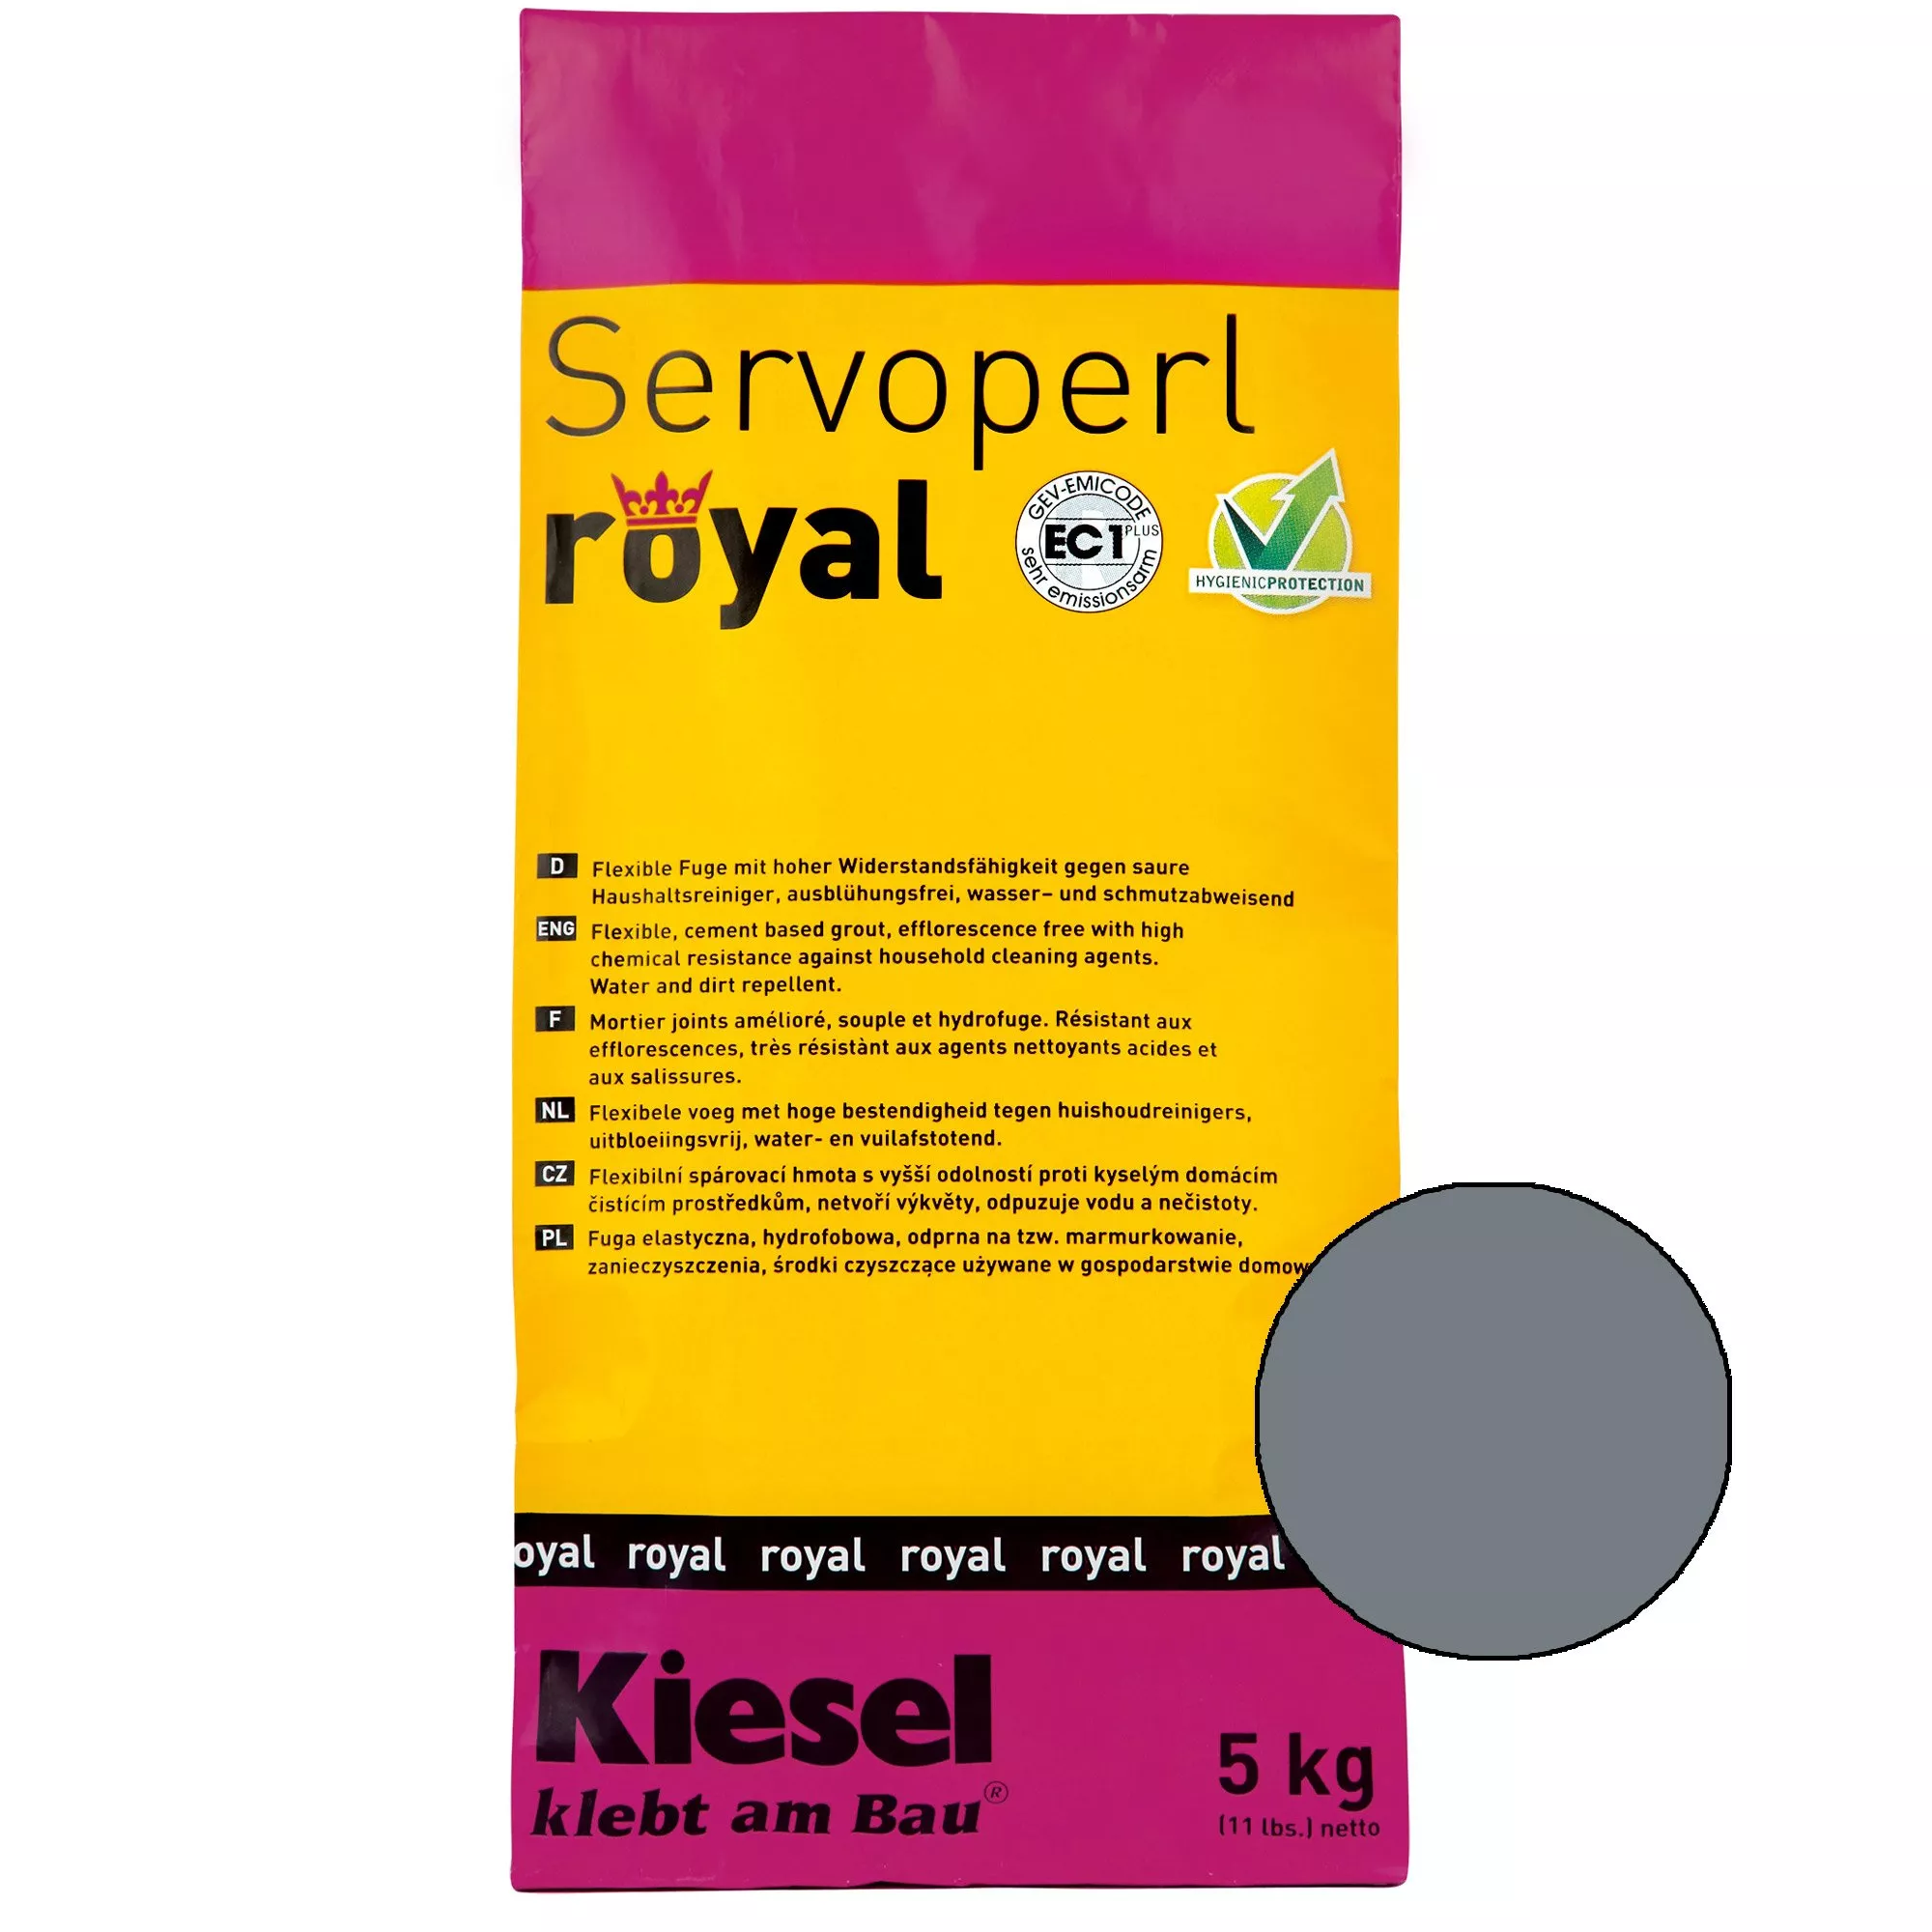 Kiesel Servoperl royal - fuga keverék - 5 kg bazalt